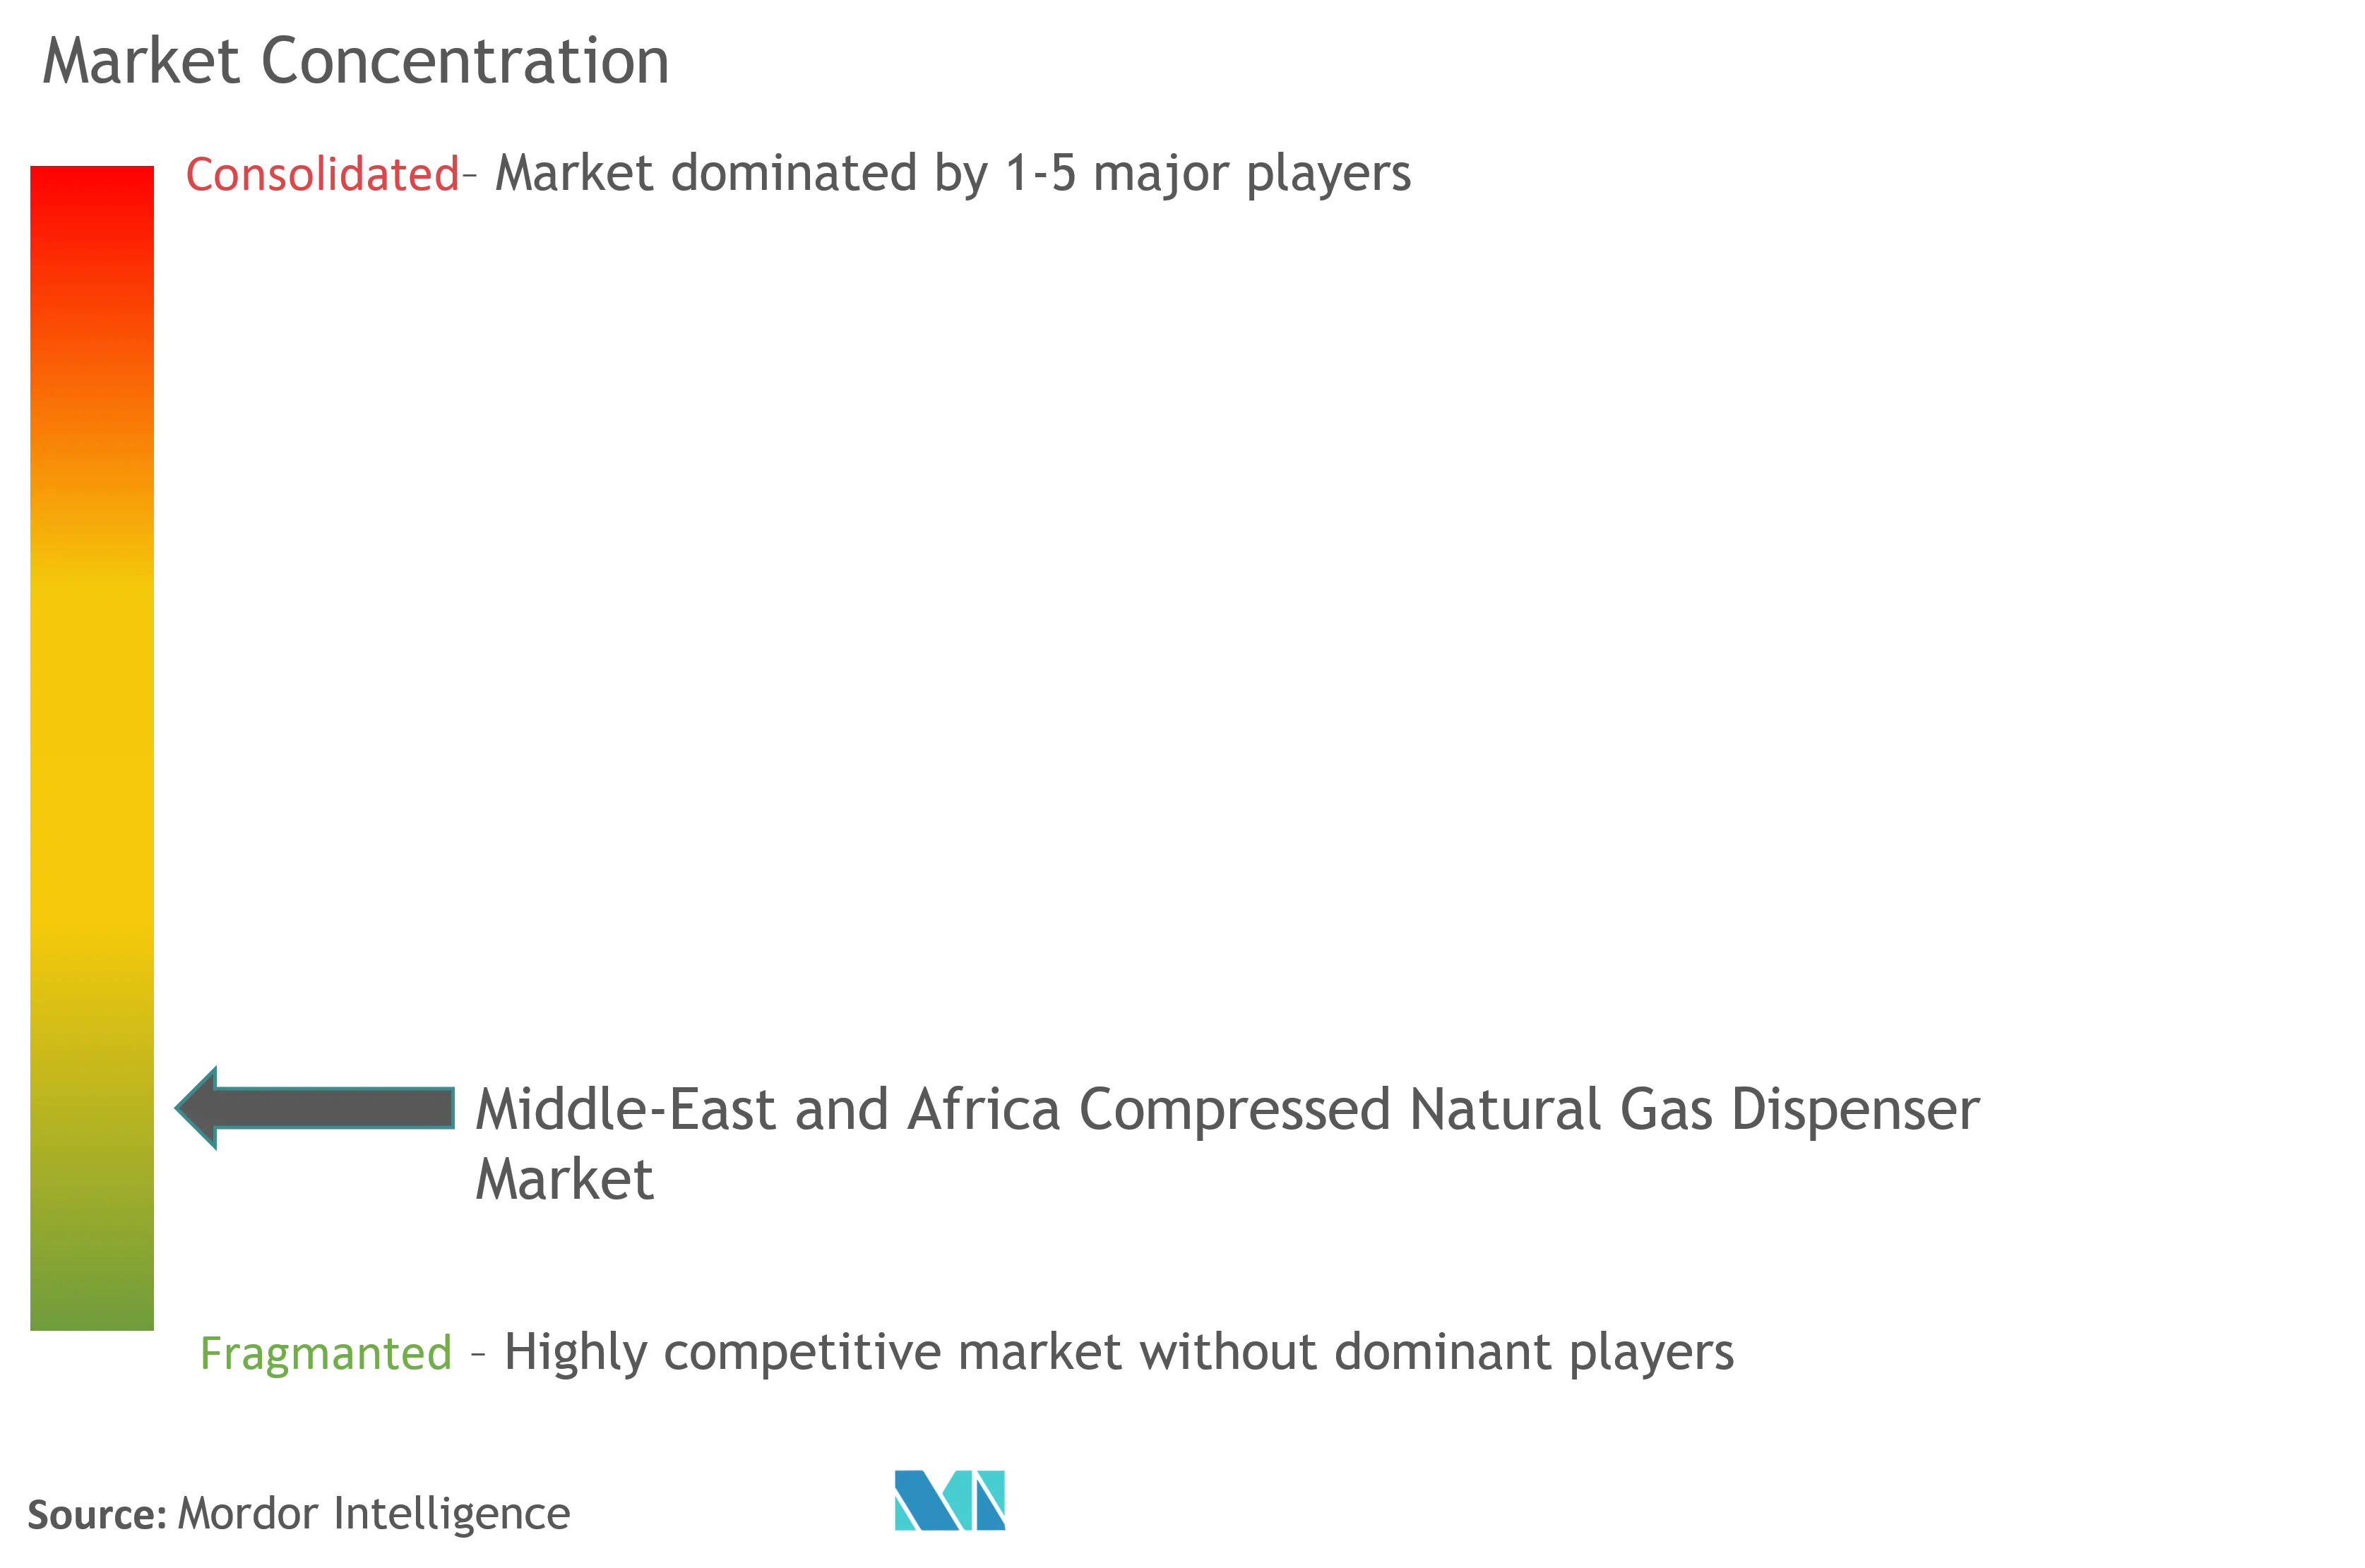 MEA圧縮天然ガス・ディスペンサー市場の集中度